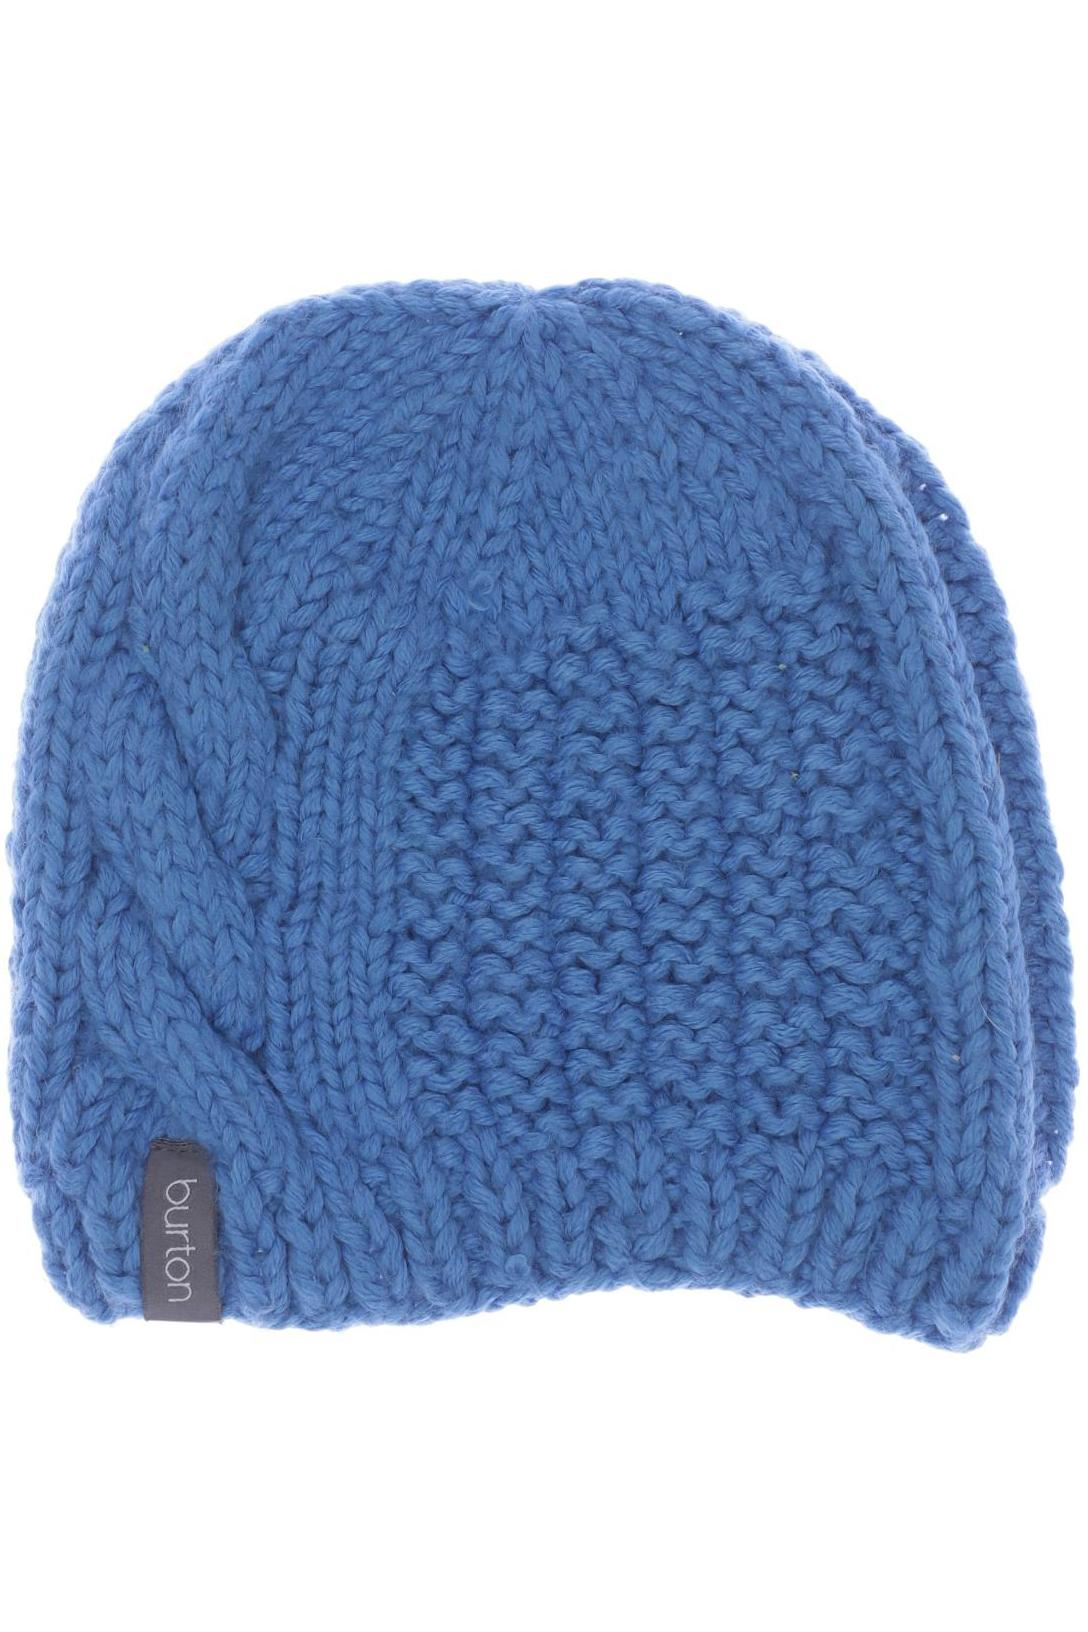 BURTON Damen Hut/Mütze, blau von Burton